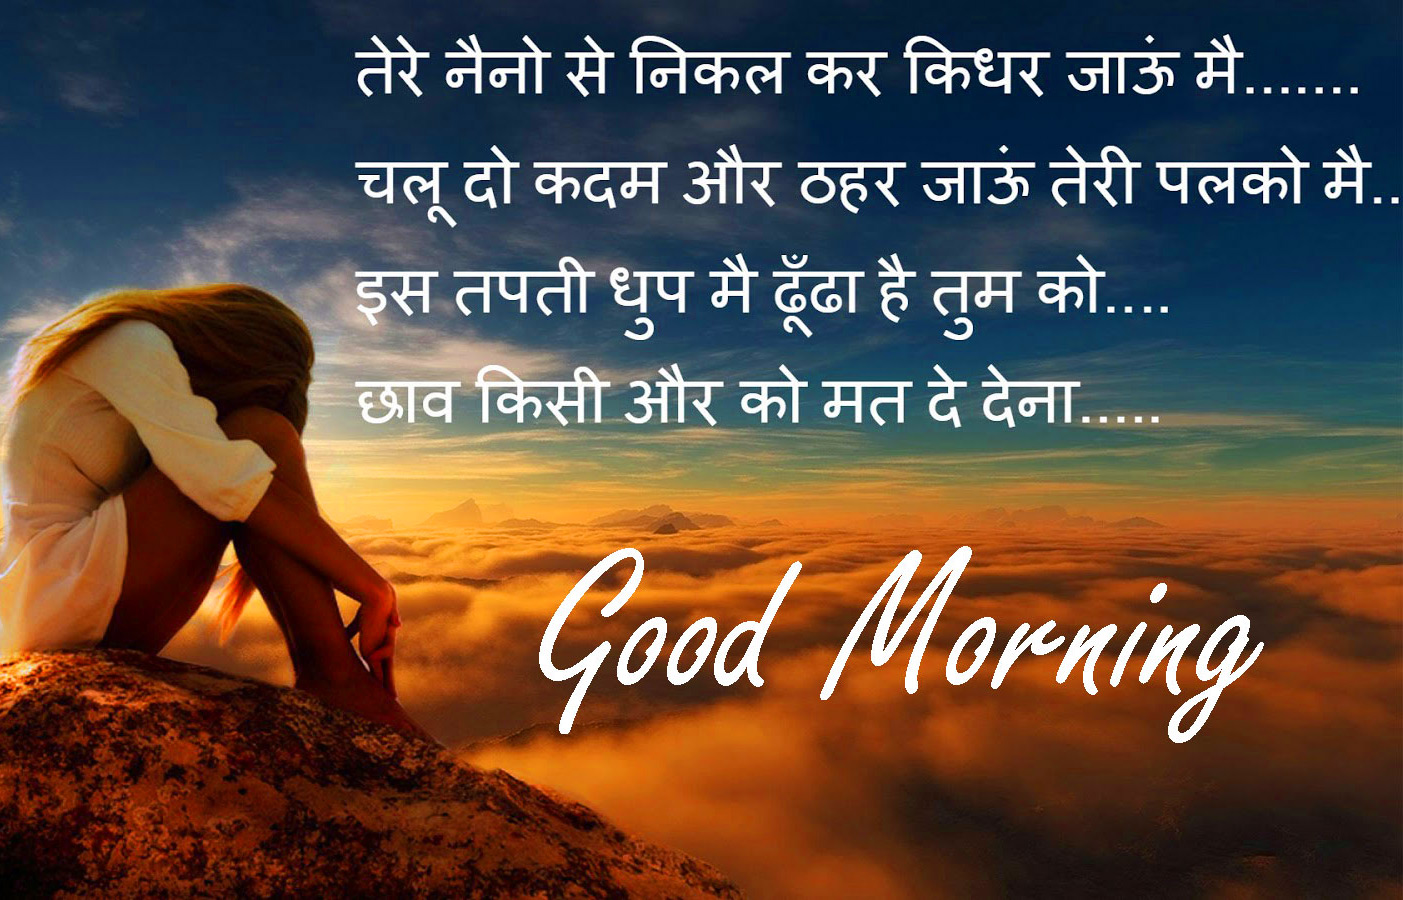 Hindi Quotes Good Morning Wallpaper Download 